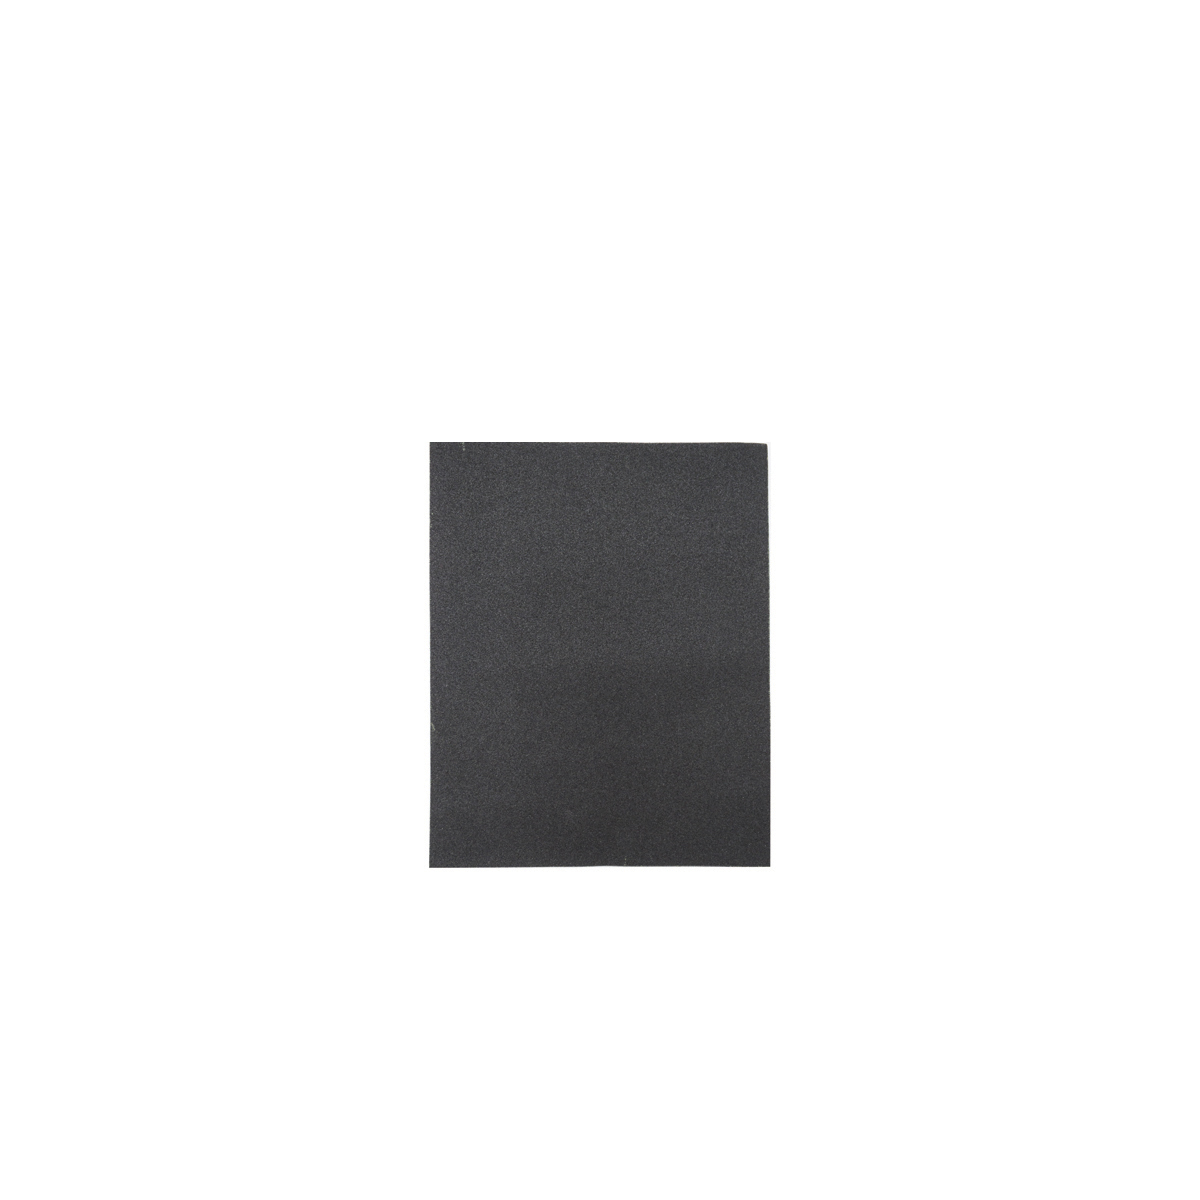 Лист шлифовальный Кедр, P 1500, 230 x 280 мм, водостойкий,   бумага, 10 шт универсальный шлифовальный лист stayer